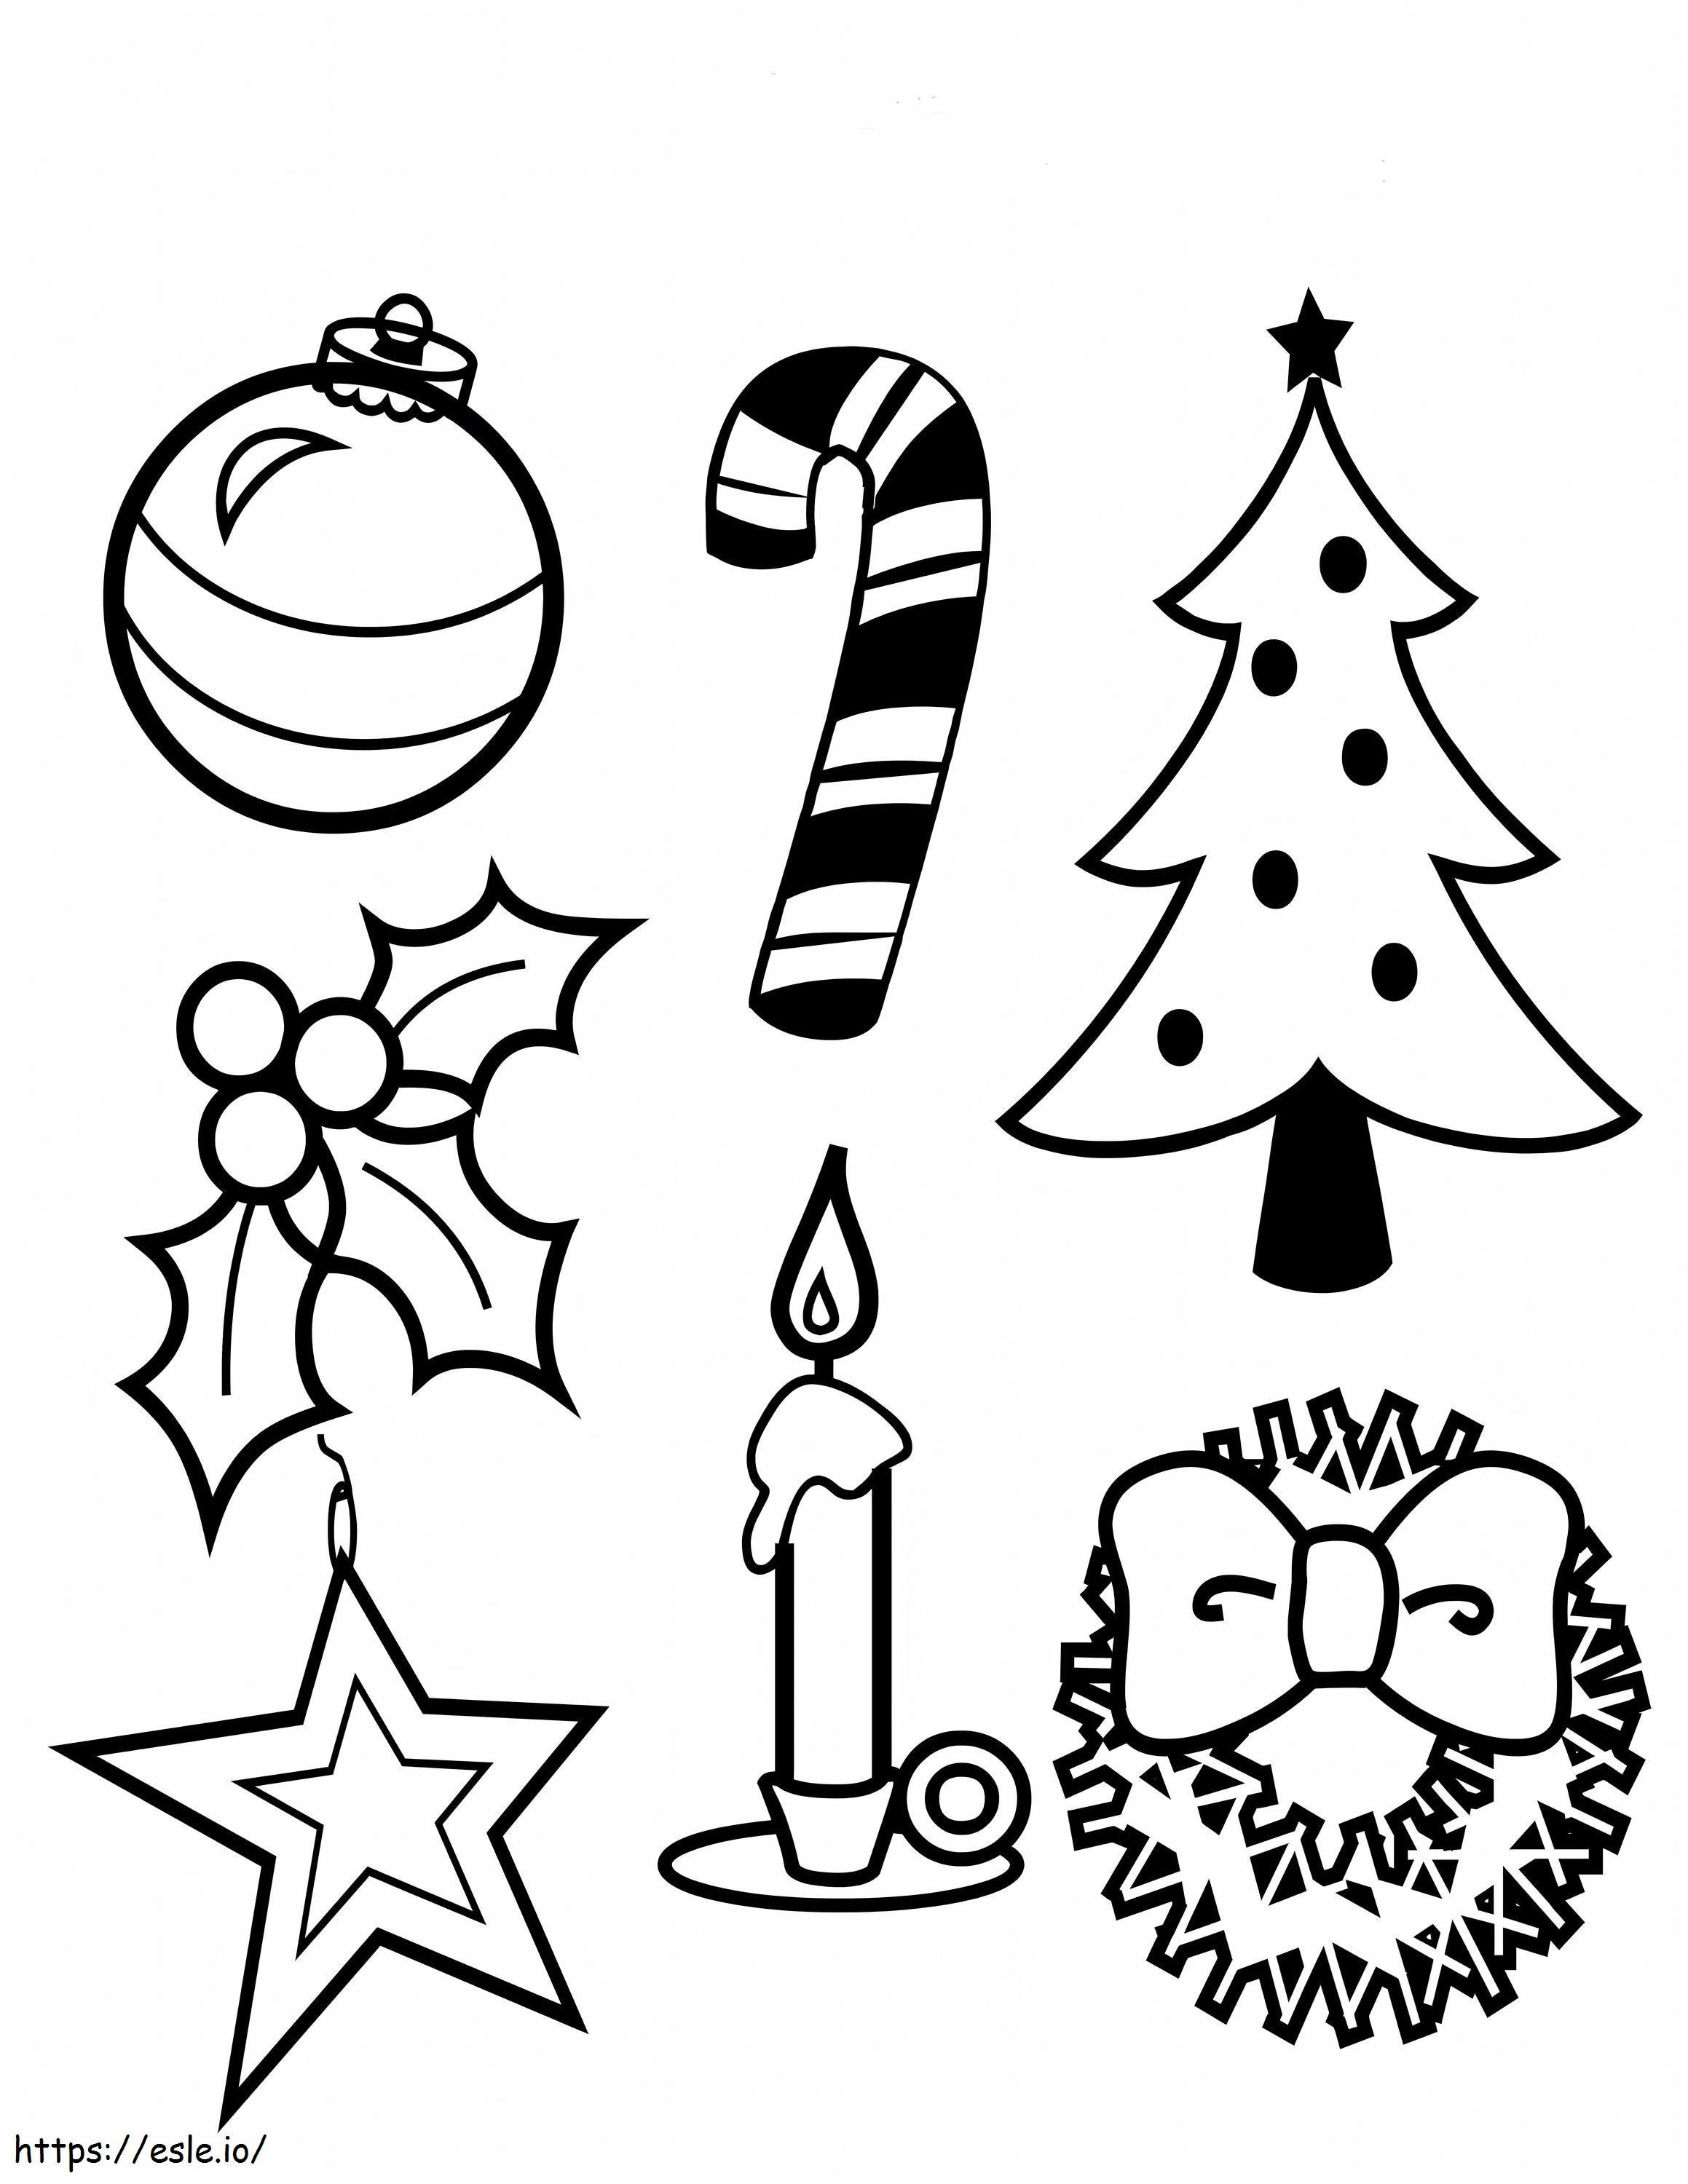 Weihnachtssymbol ausmalbilder